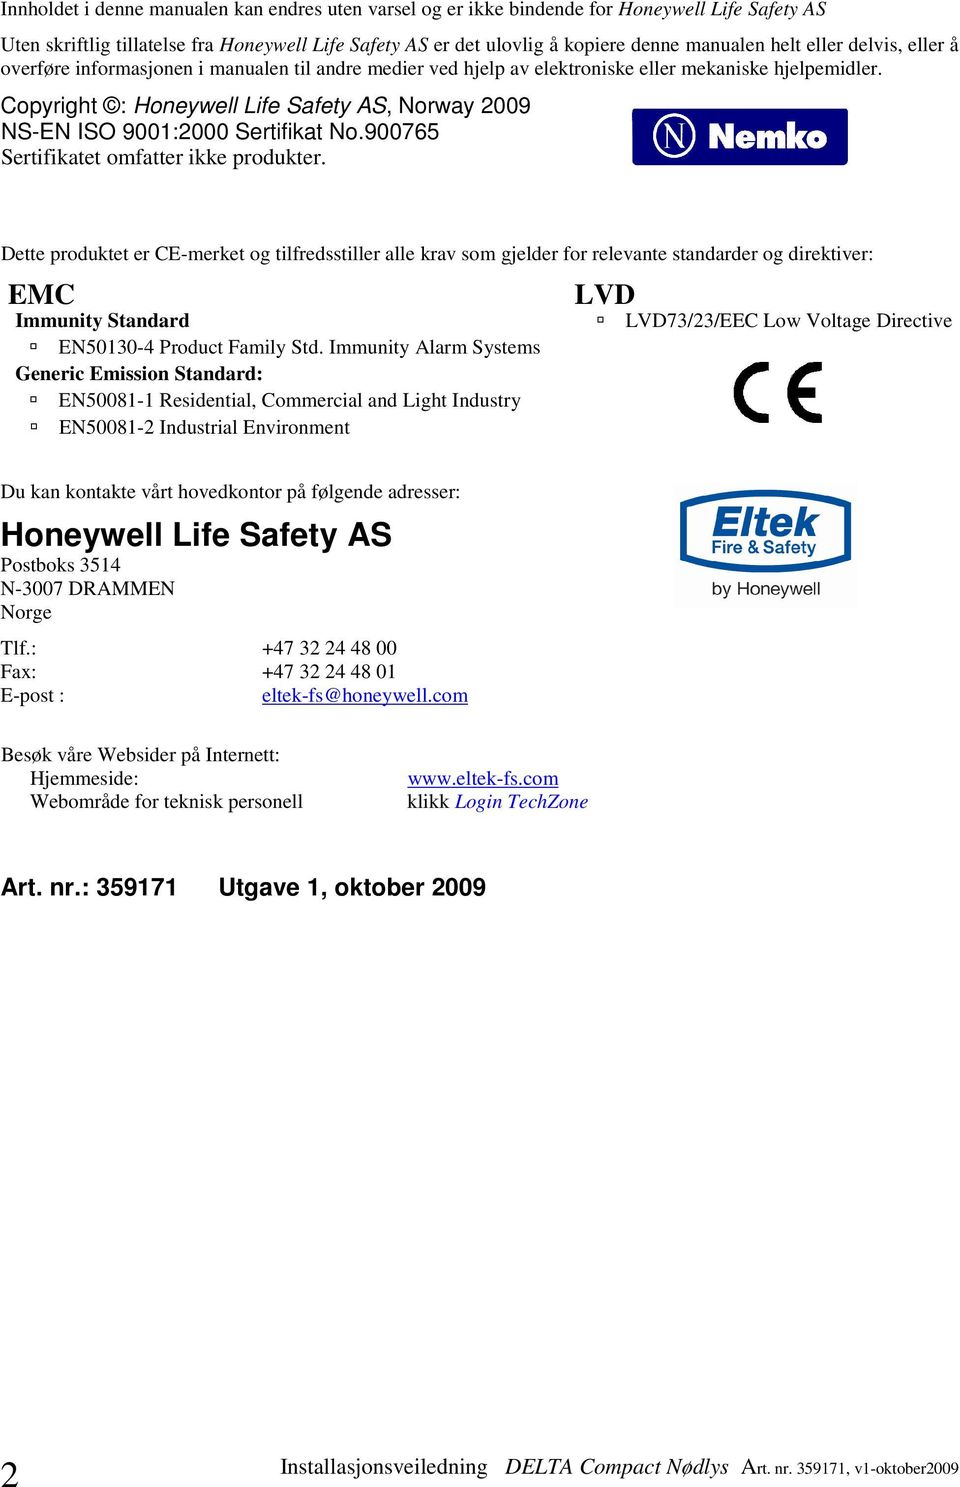 Copyright : Honeywell Life Safety AS, Norway 009 NS-EN ISO 900:000 Sertifikat No.900765 Sertifikatet omfatter ikke produkter.